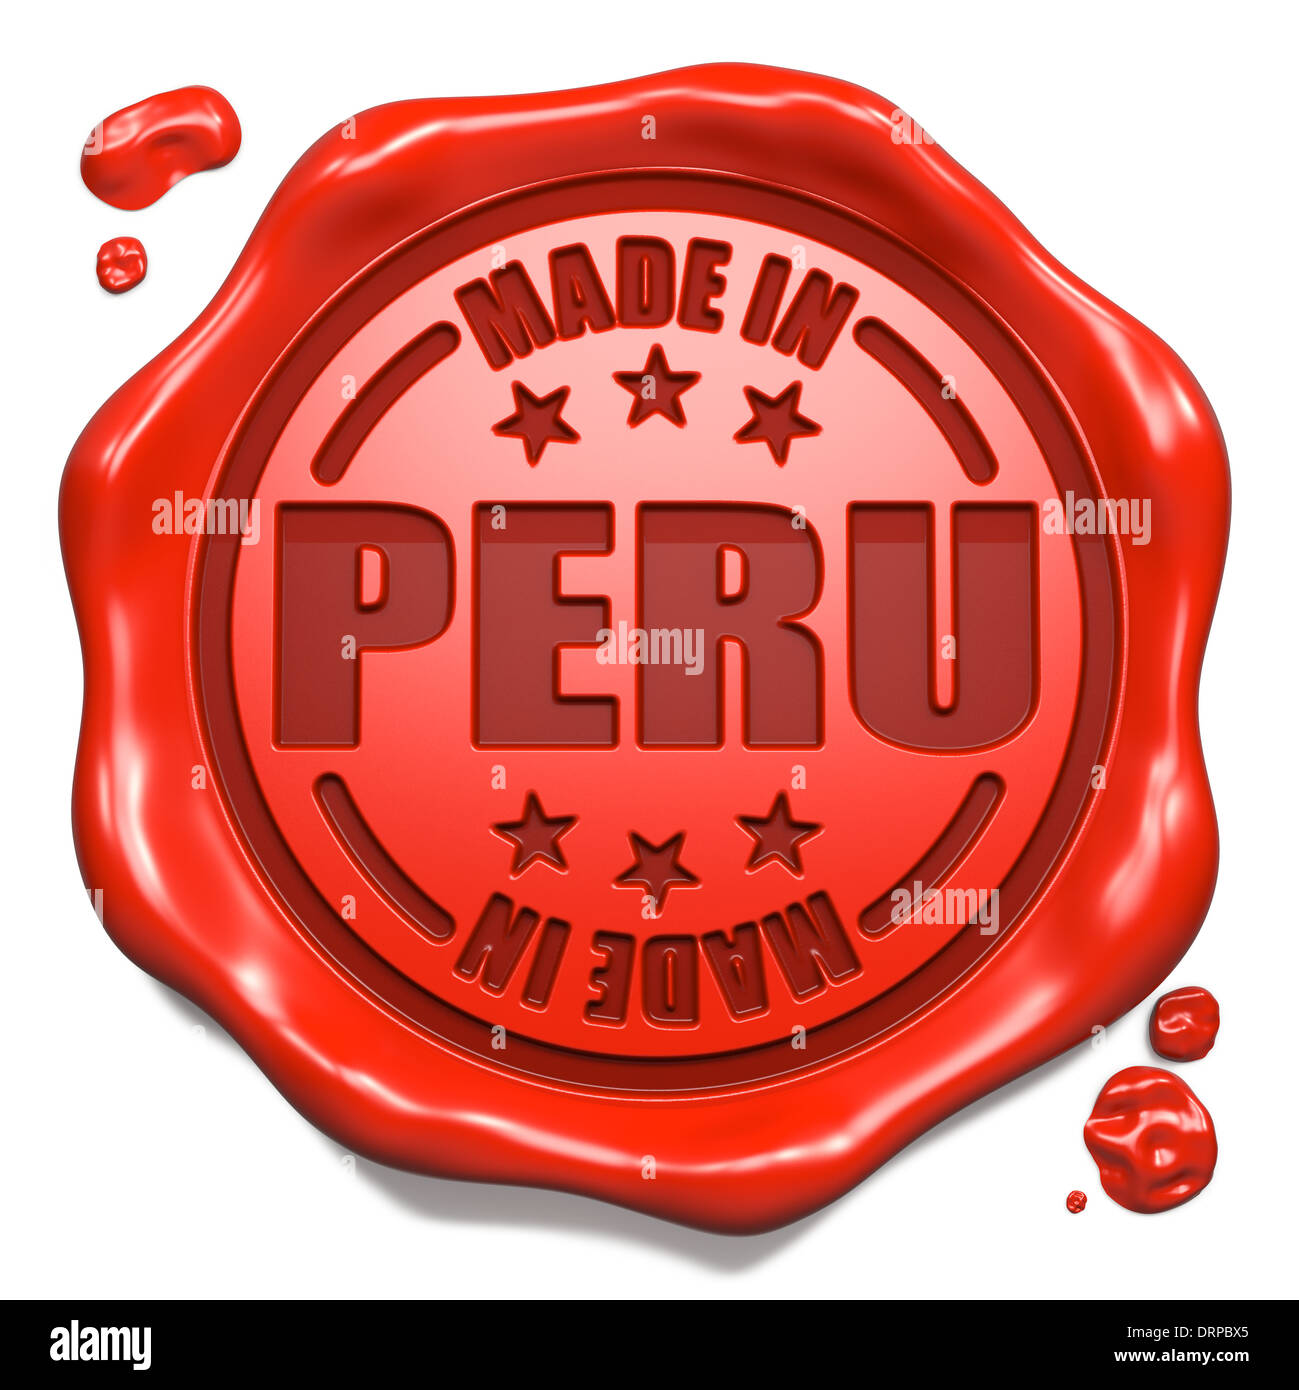 Realizzati in Perù - Timbro sul sigillo di cera rossa. Foto Stock